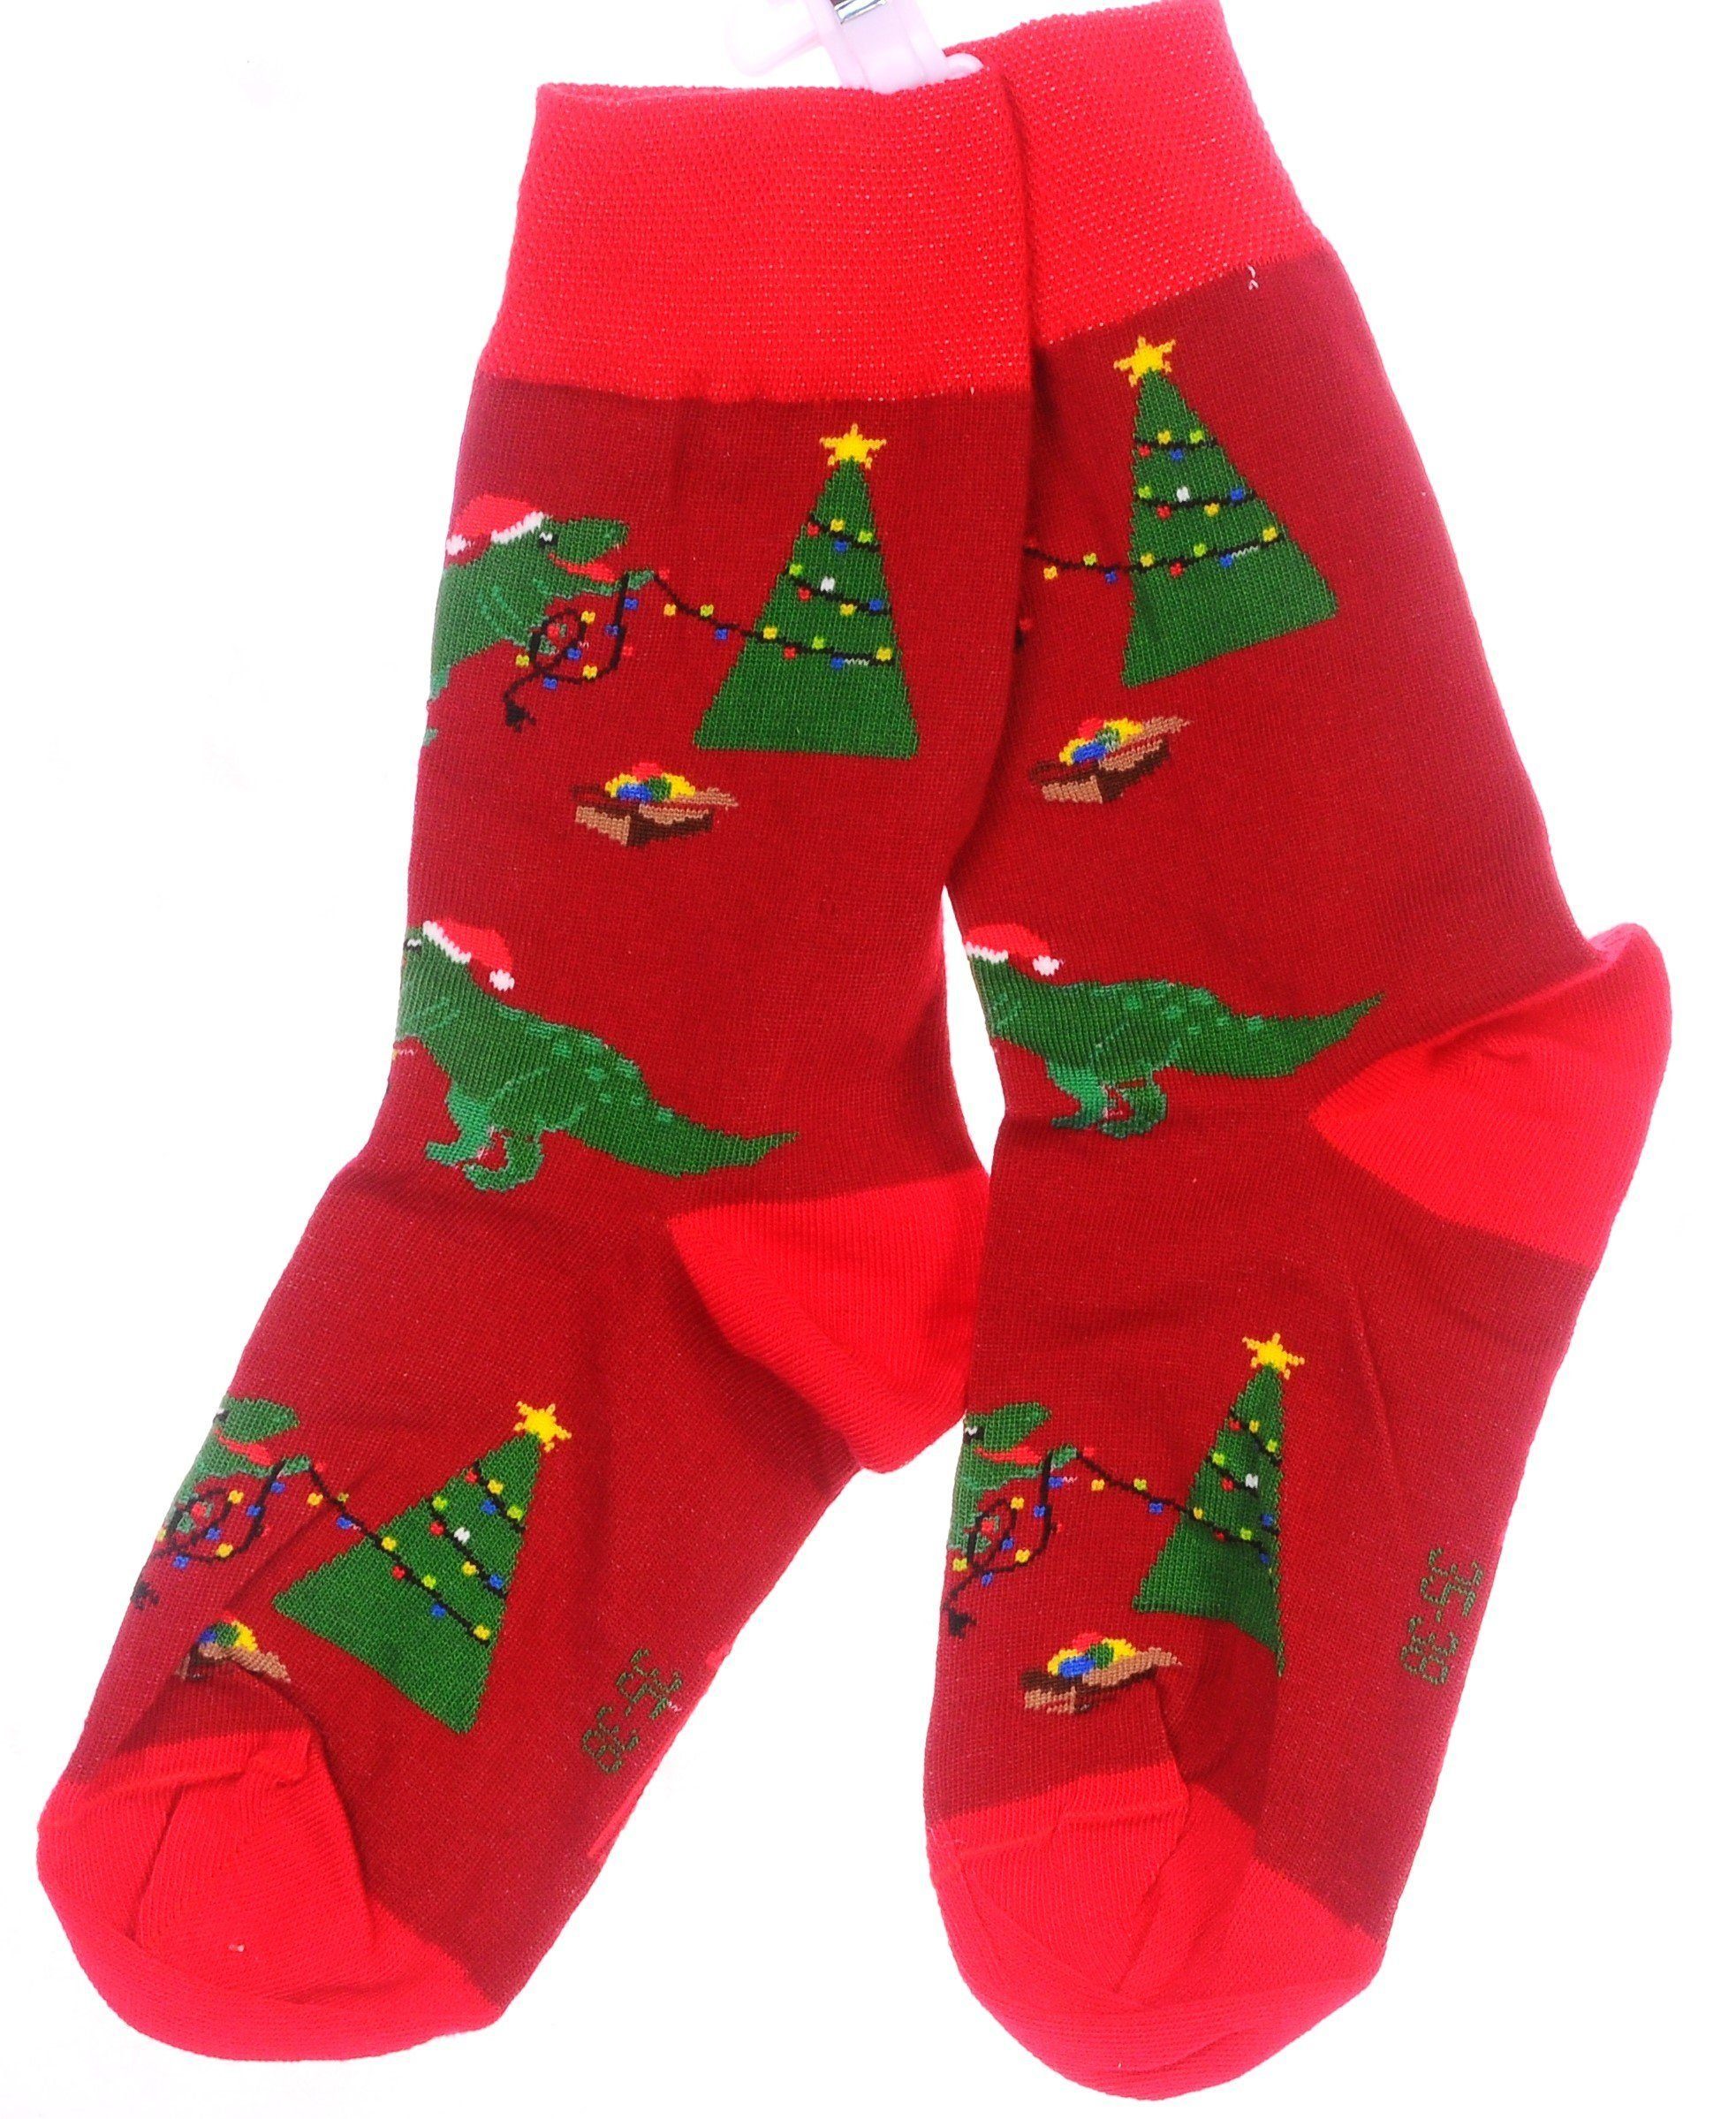 weihnachtlich 46 Paar bunt, 35 Strümpfe Socken 38 schön, Socken Rot_Tanne Weihnachtssocken 43 1 Martinex 42 39